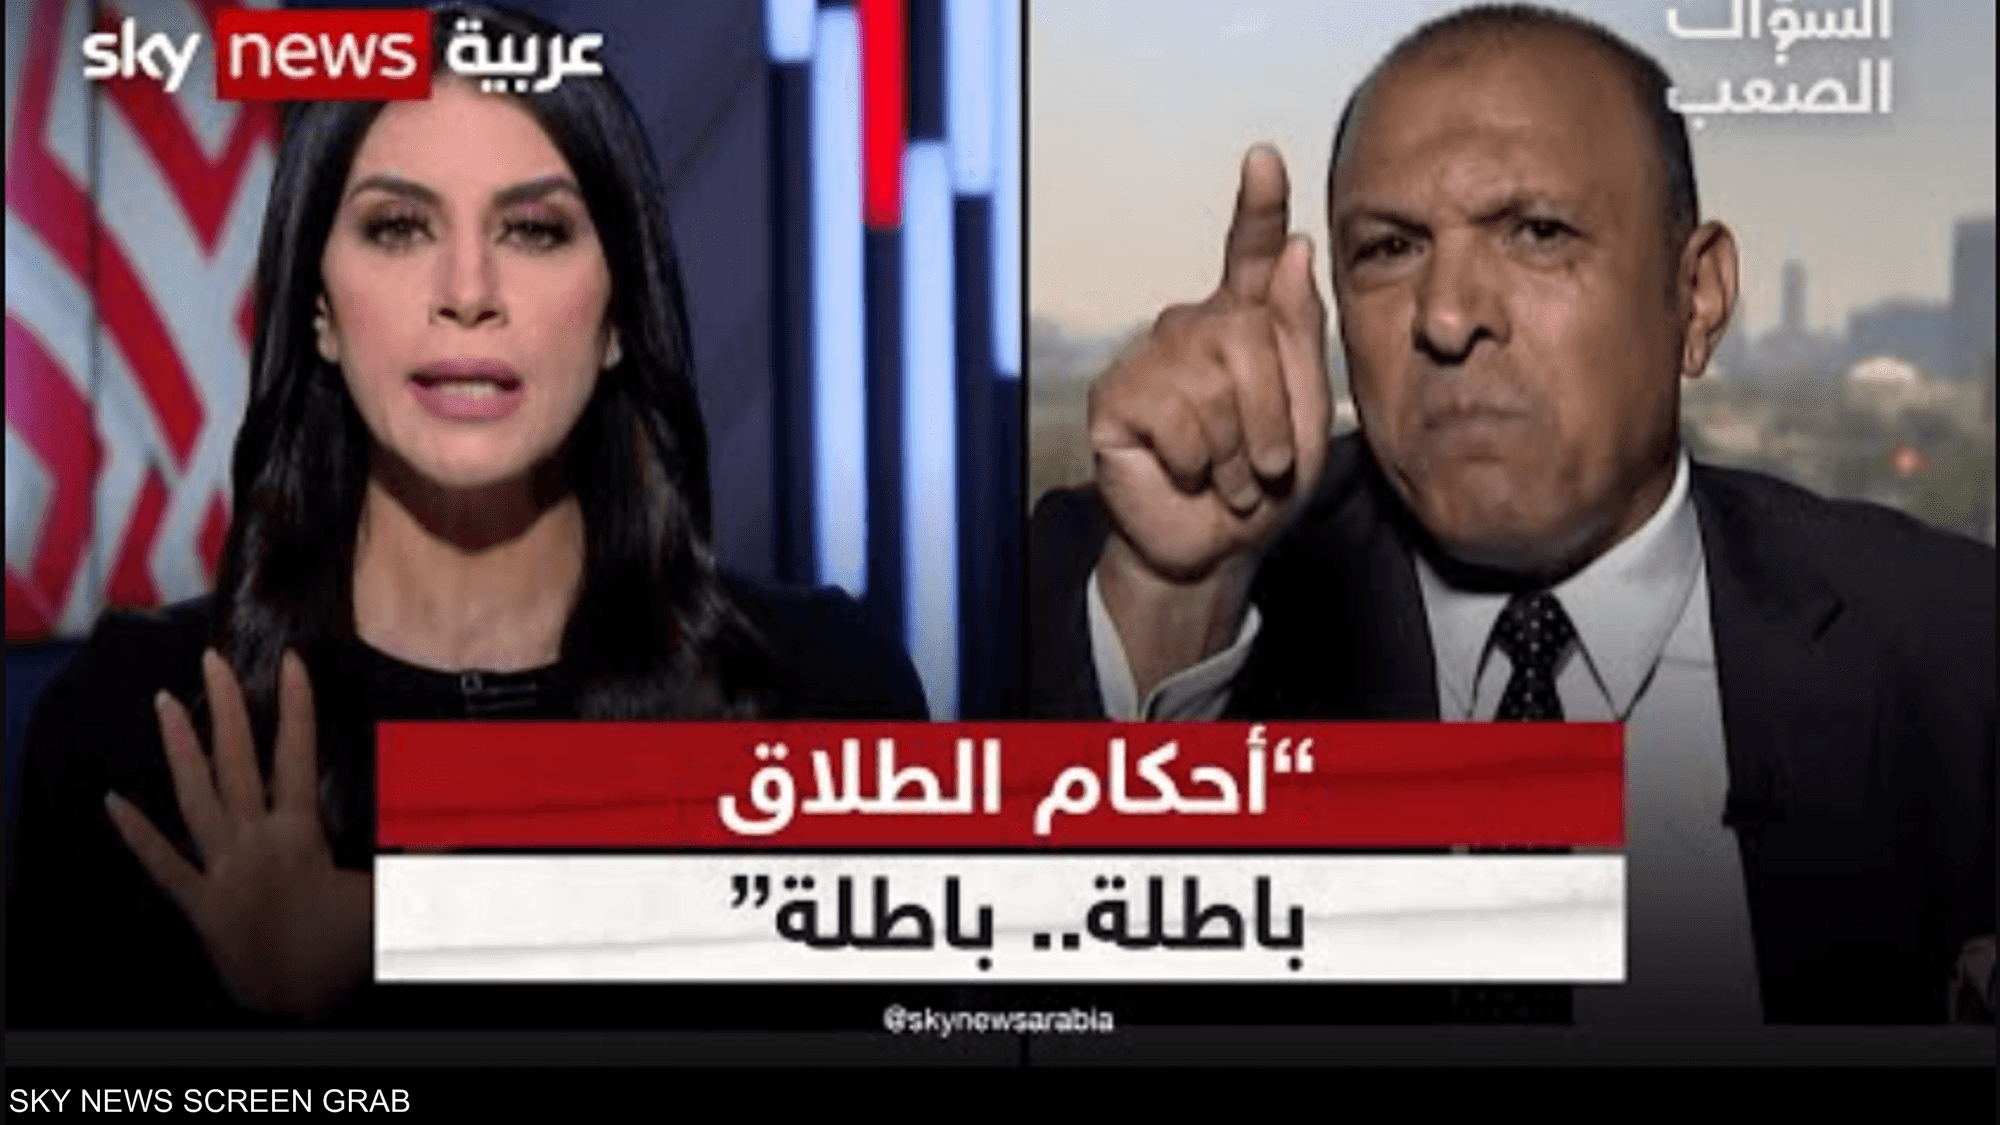 عصام عجاج: أحكام الطلاق بمحاكم مصر باطلة والرجل مظلوم